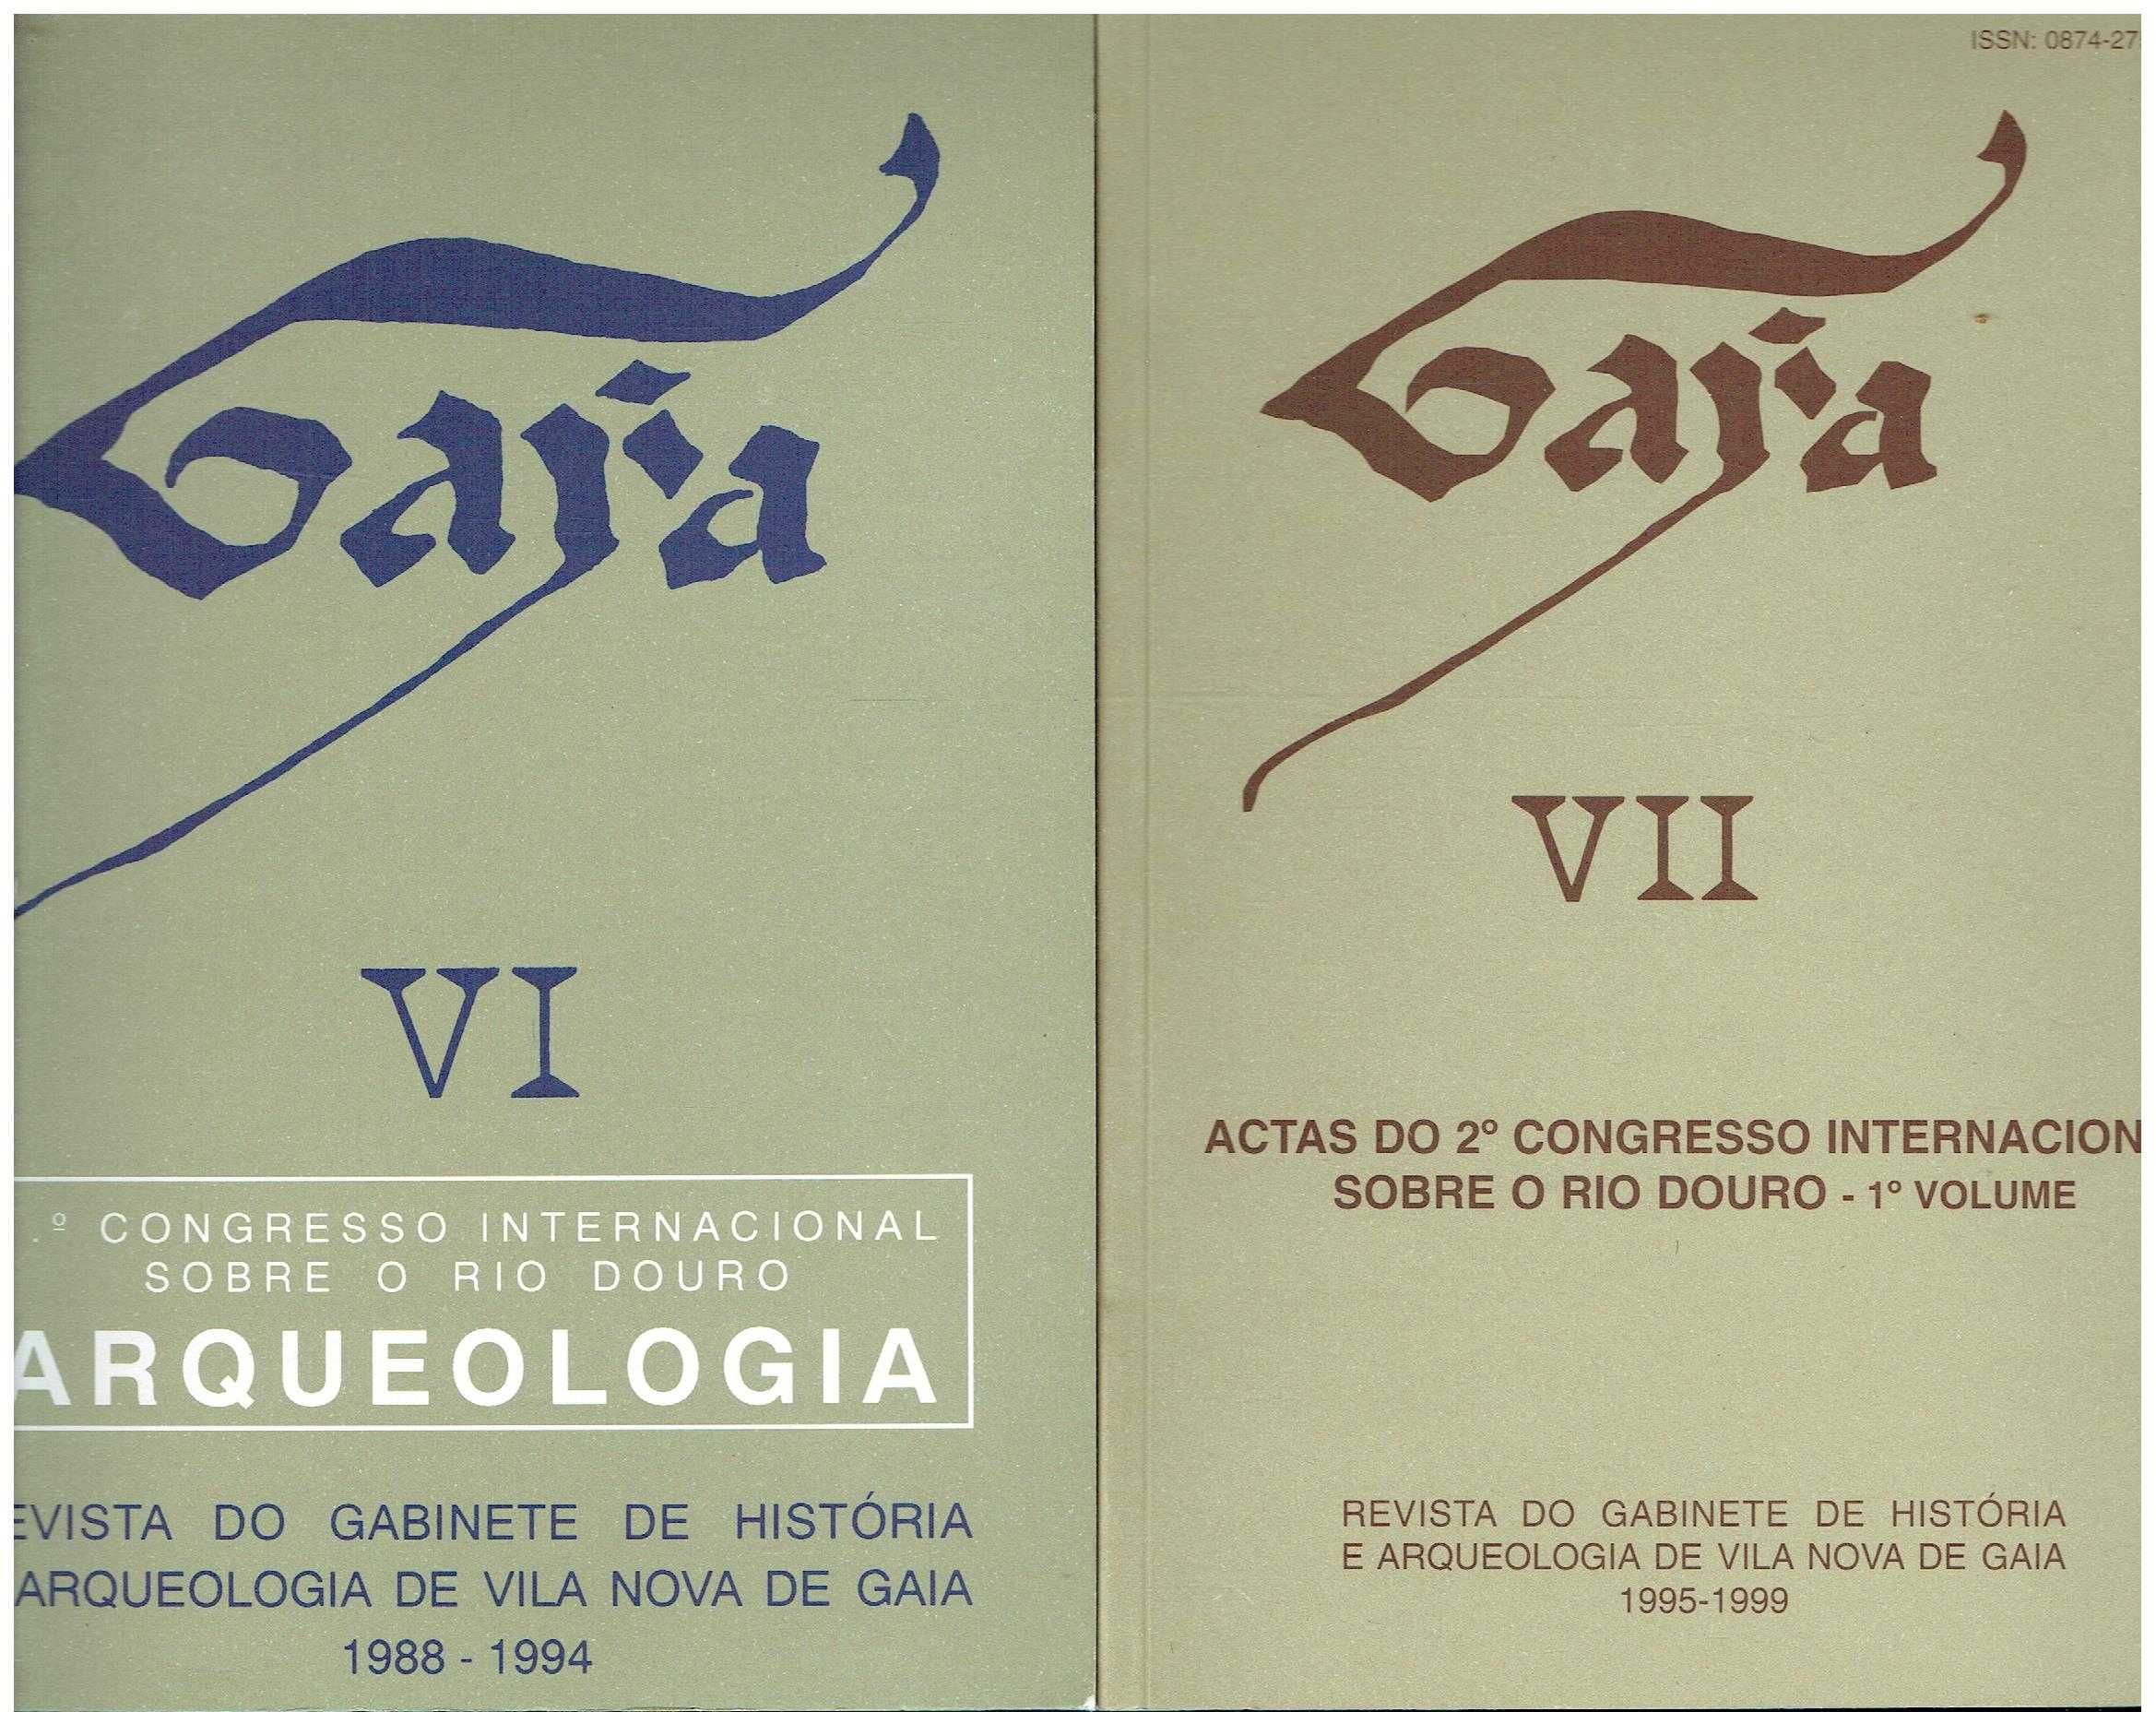 6723

Gaya
Revista  de História e Arqueologia de Vila Nova de Gaia